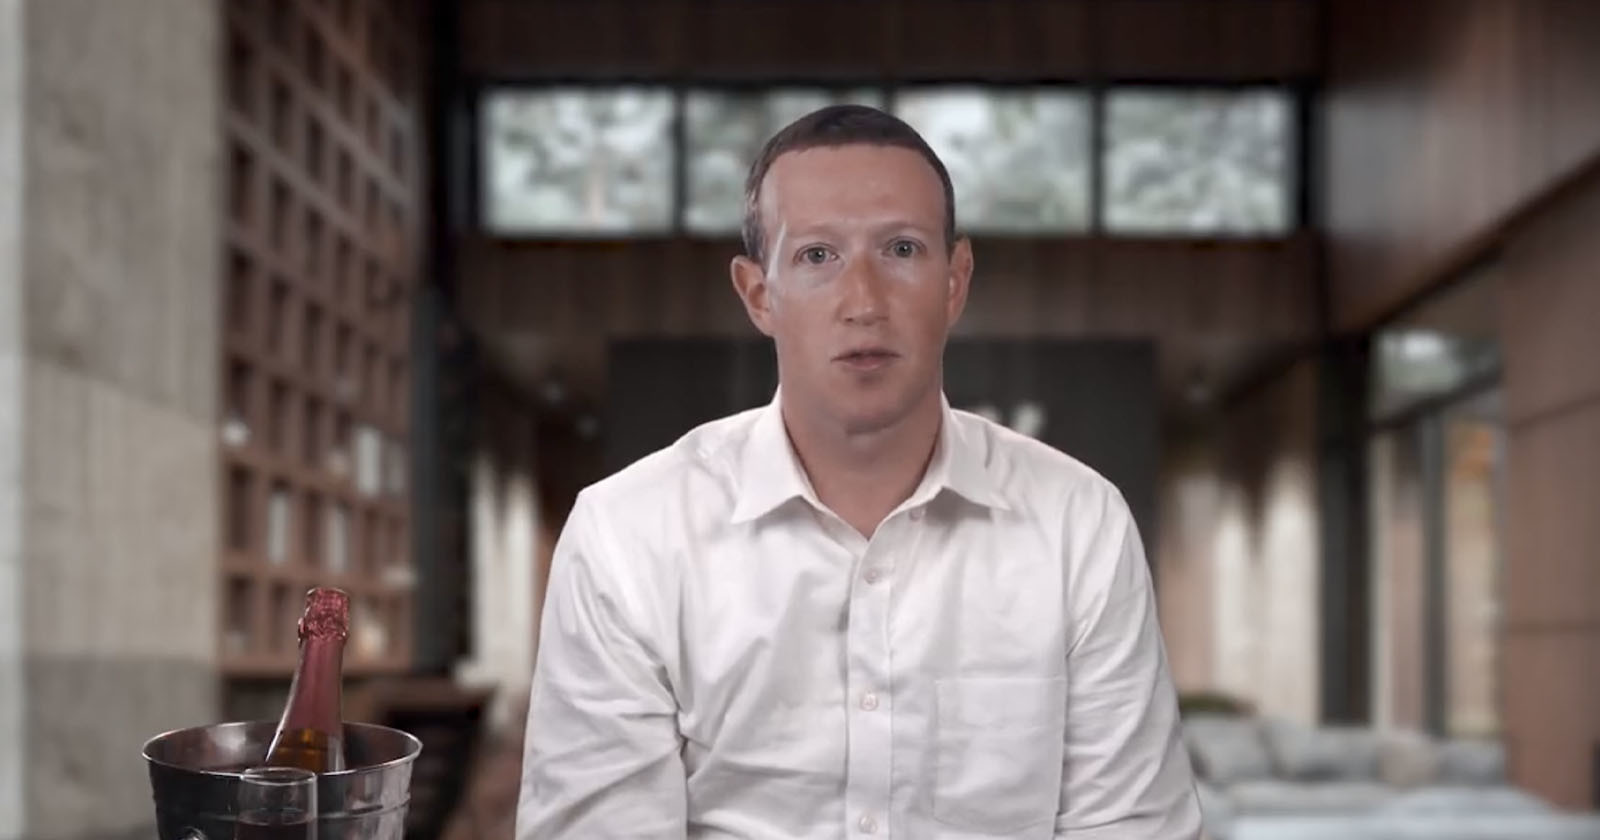 Chilling Deepfake Video of Mark Zuckerberg Mocks Congress